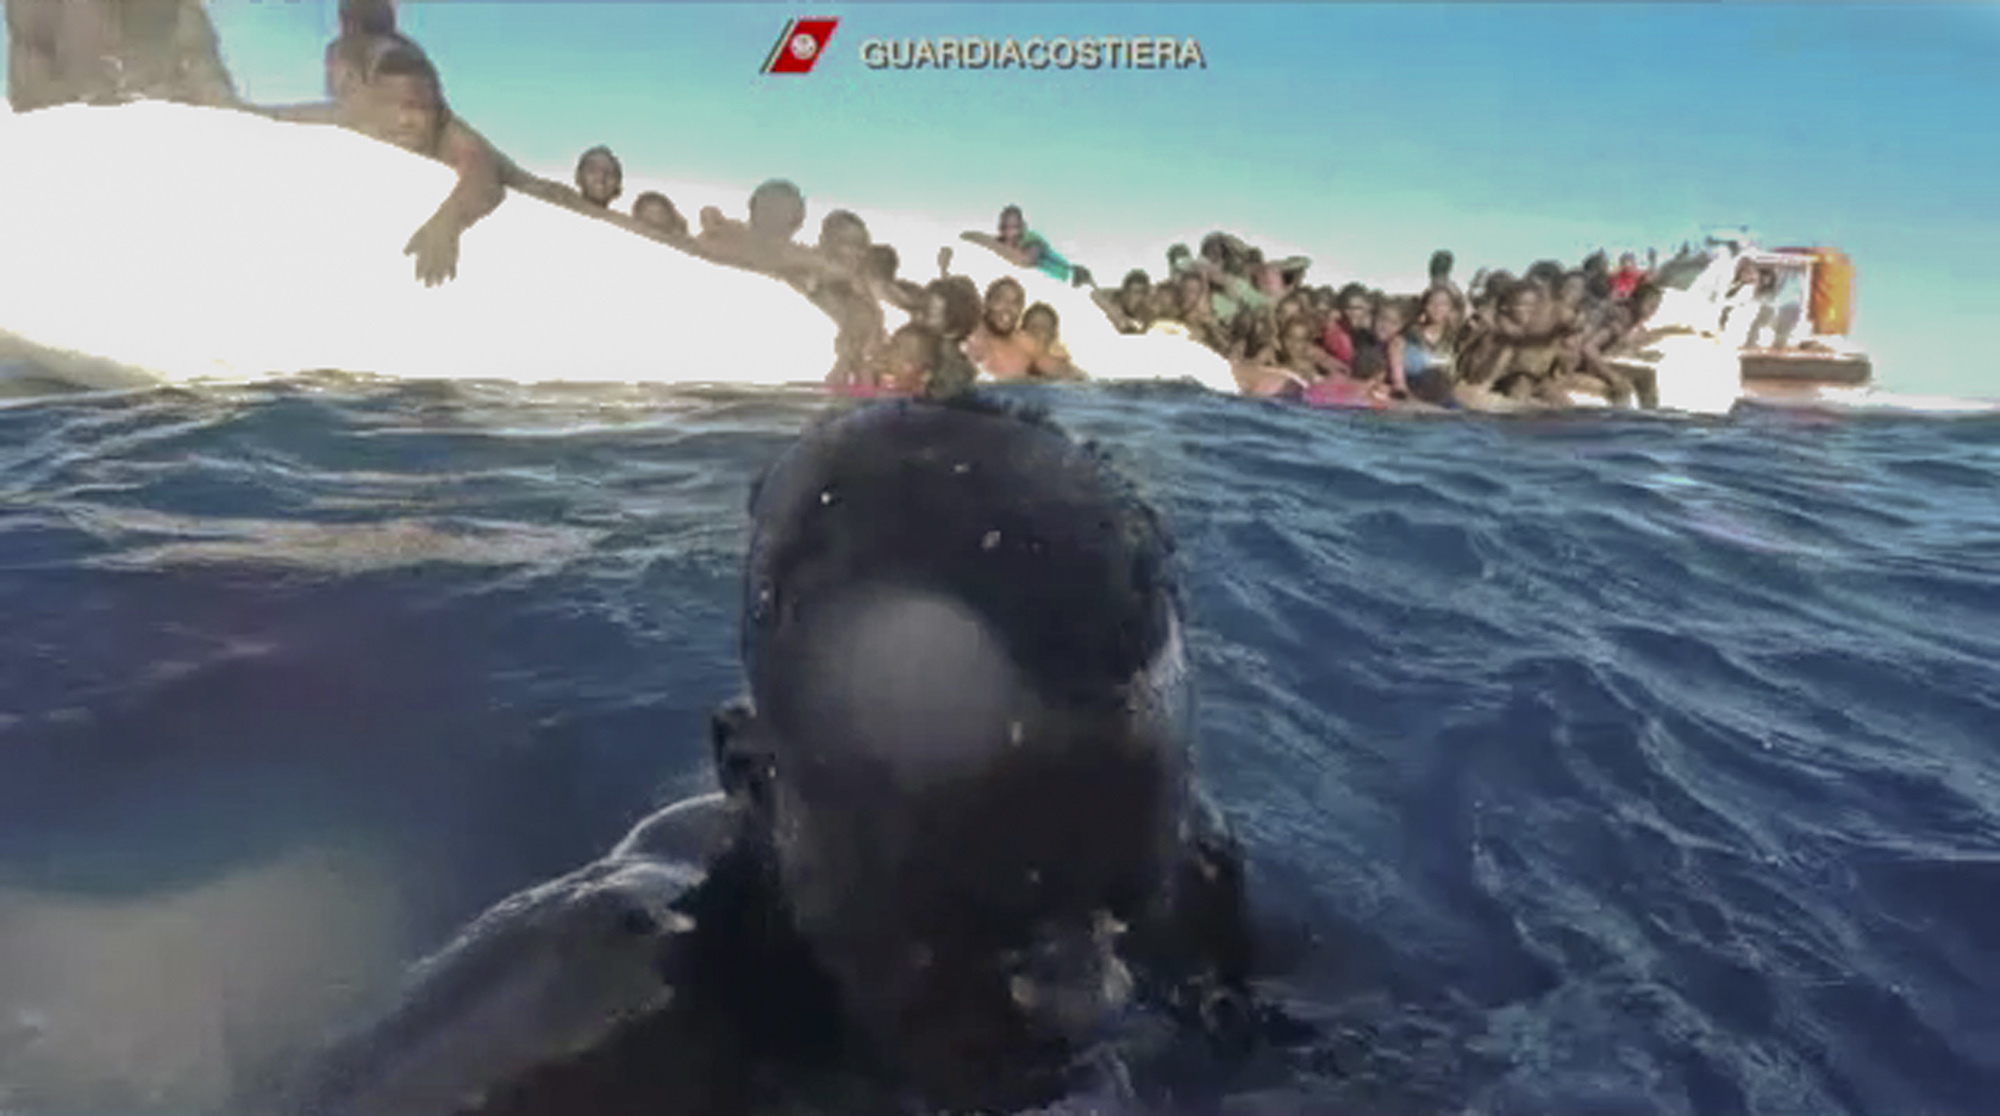 Wife Tease Public Beach - Smuggling boat sinks in Mediterranean, 64 feared dead | The ...